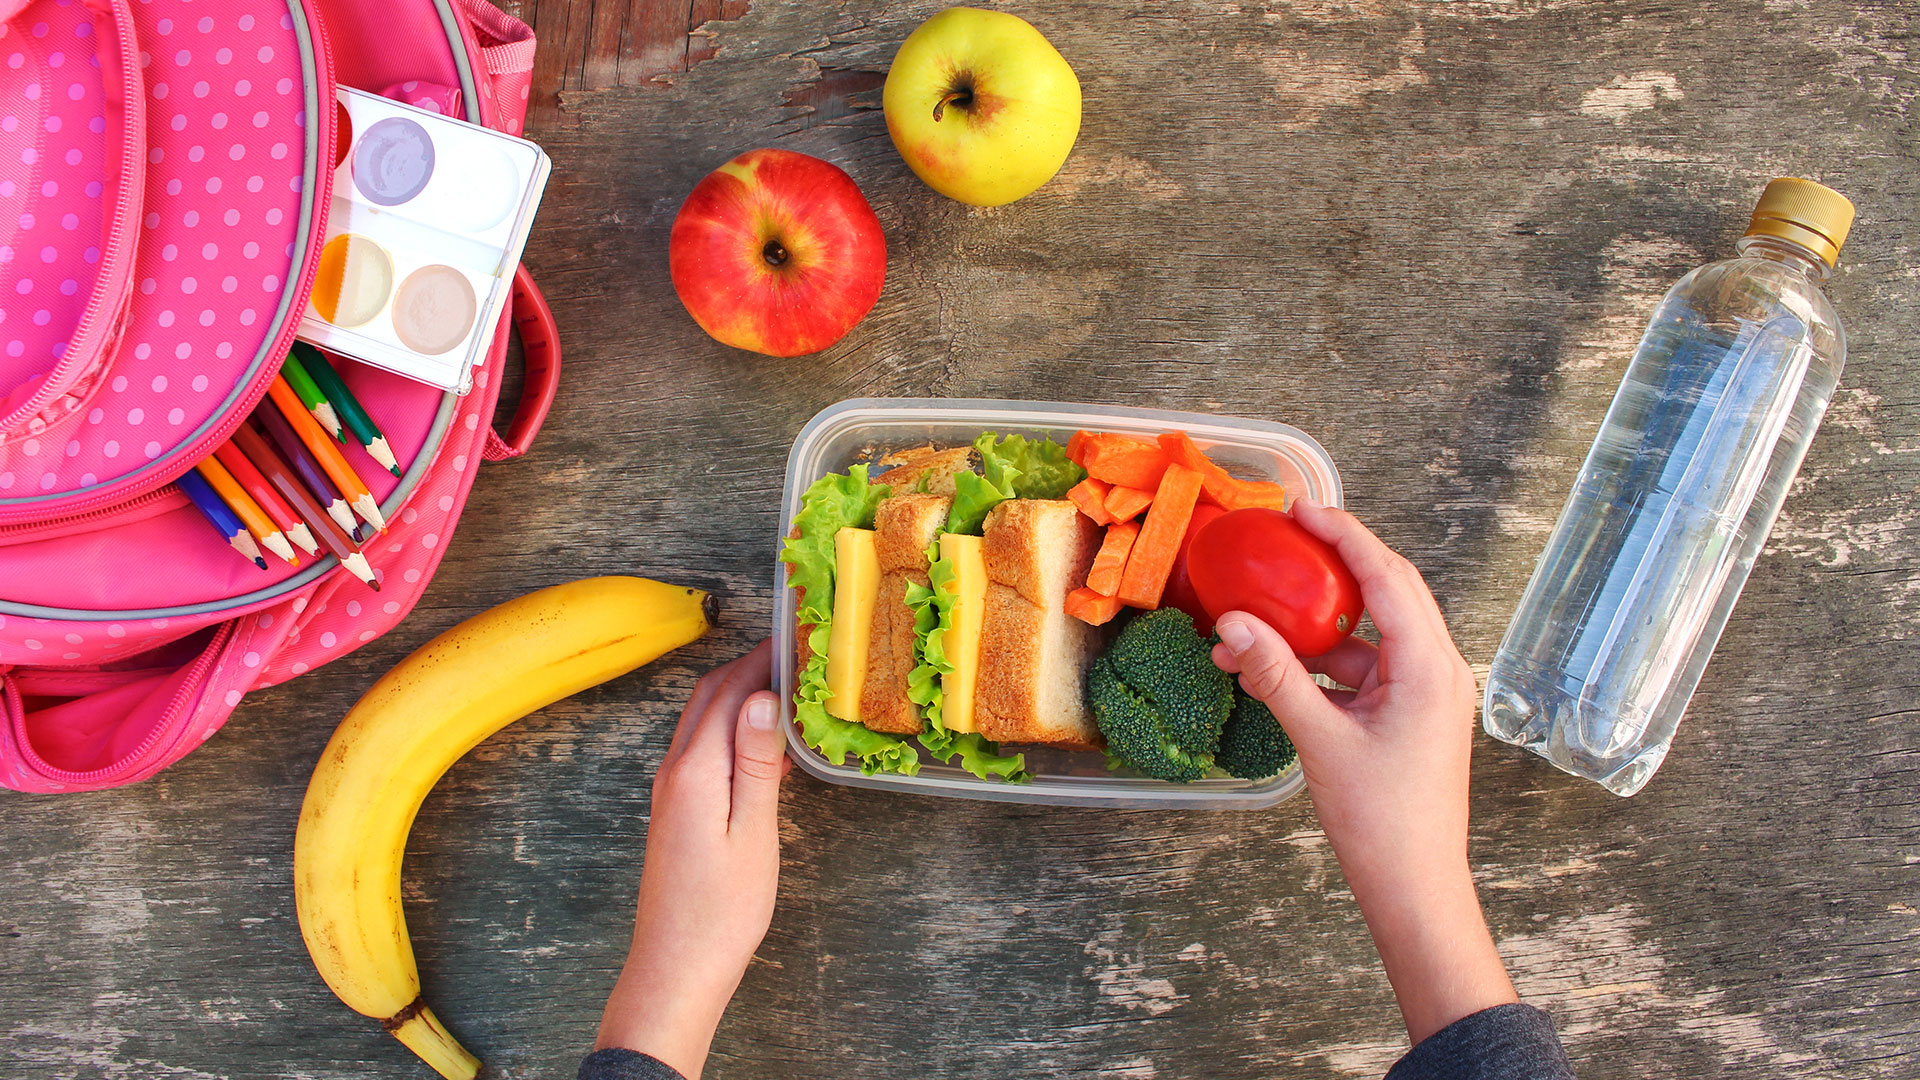 Sandwichs, fruits et légumes dans un tupperware en plastique avec un sac à dos et une bouteille d'eau à côté sur un fond en bois.